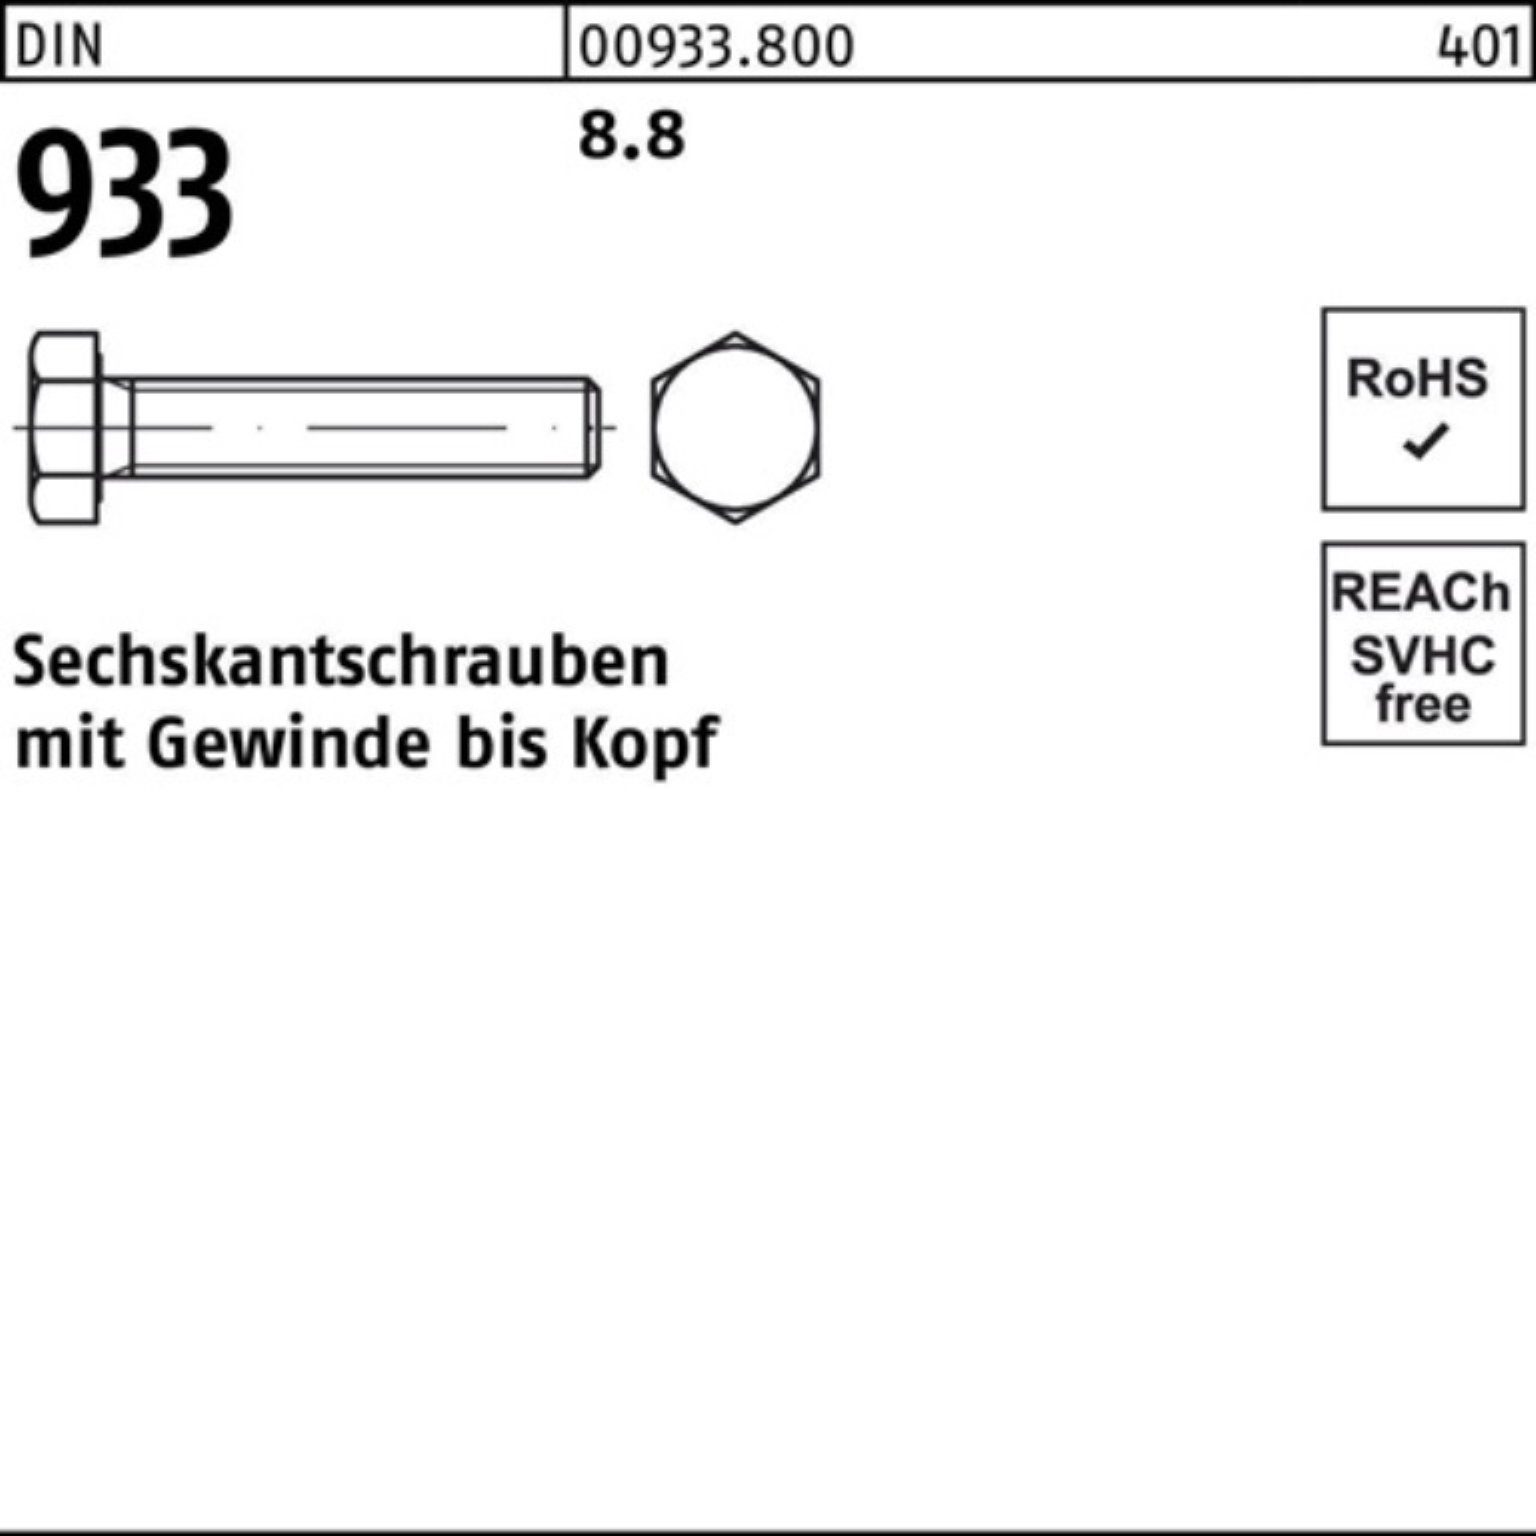 Reyher Sechskantschraube 100er Stück DIN M14x 933 40 DIN Pack Sechskantschraube 933 100 VG 8.8